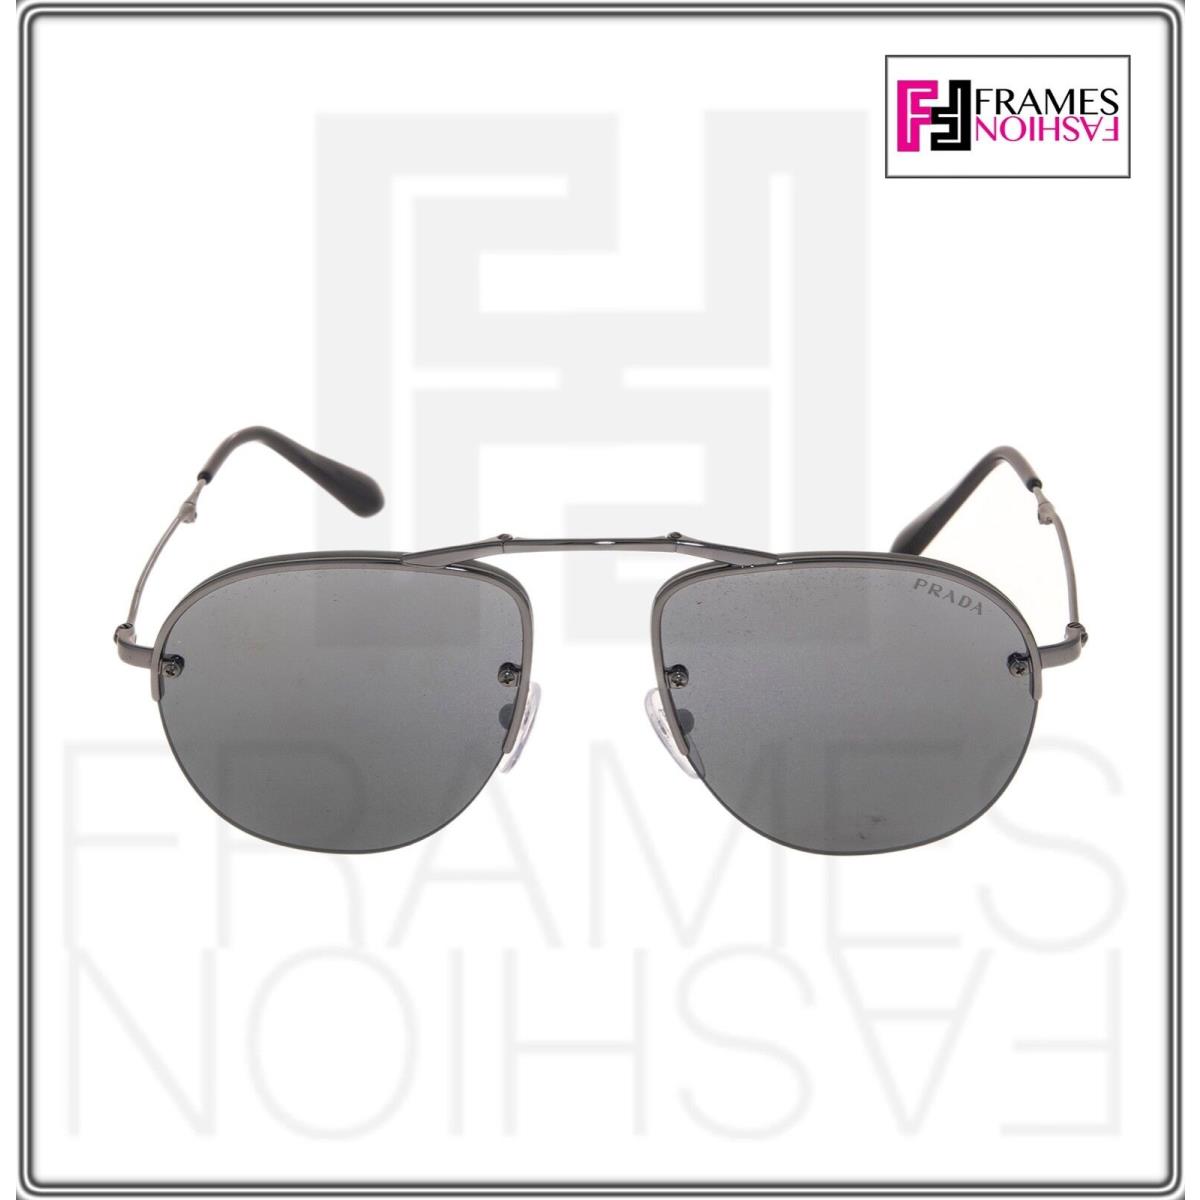 Prada sunglasses  - 5AV-205 , Gunmetal Frame, Silver Lens 1